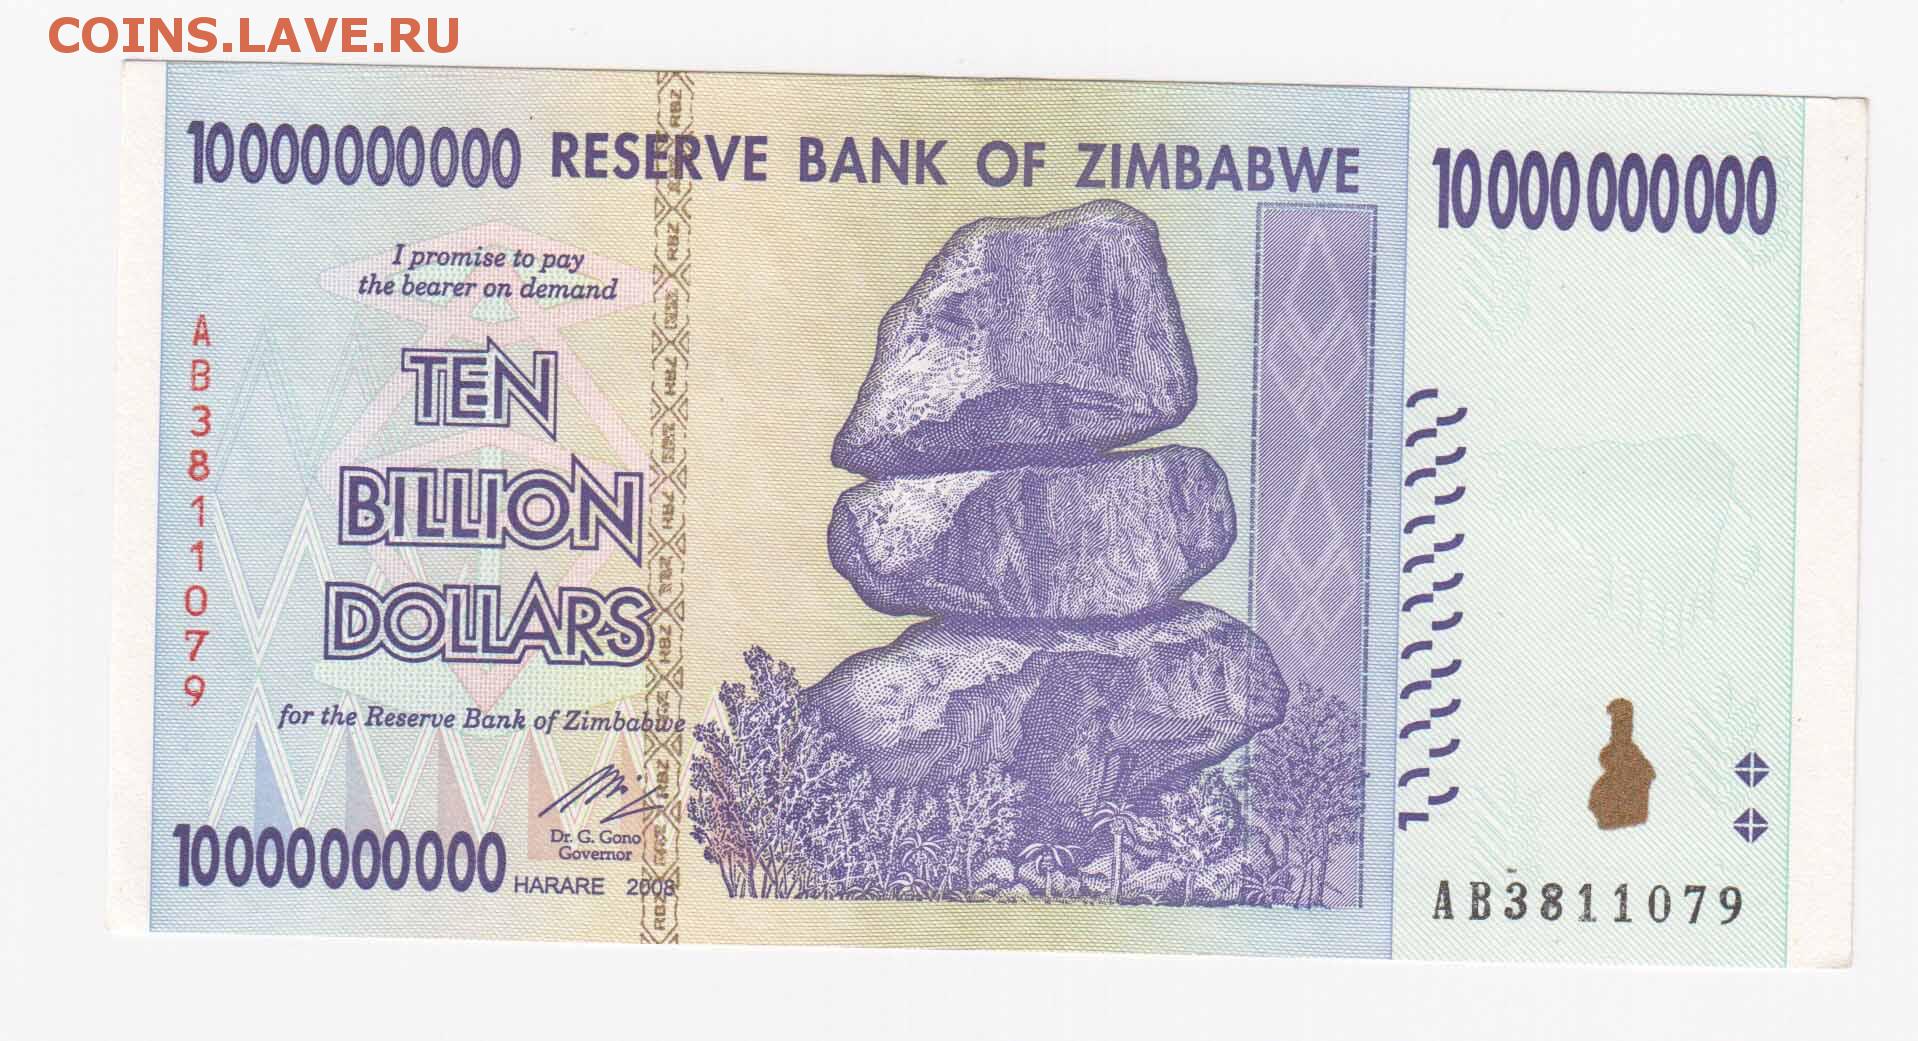 2008 долларов в рублях. Зимбабве 5000000000 долларов 2008. Банкнота Зимбабве 500 миллионов долларов 2008. 10 Триллионов долларов Зимбабве. Миллиард долларов Зимбабве.